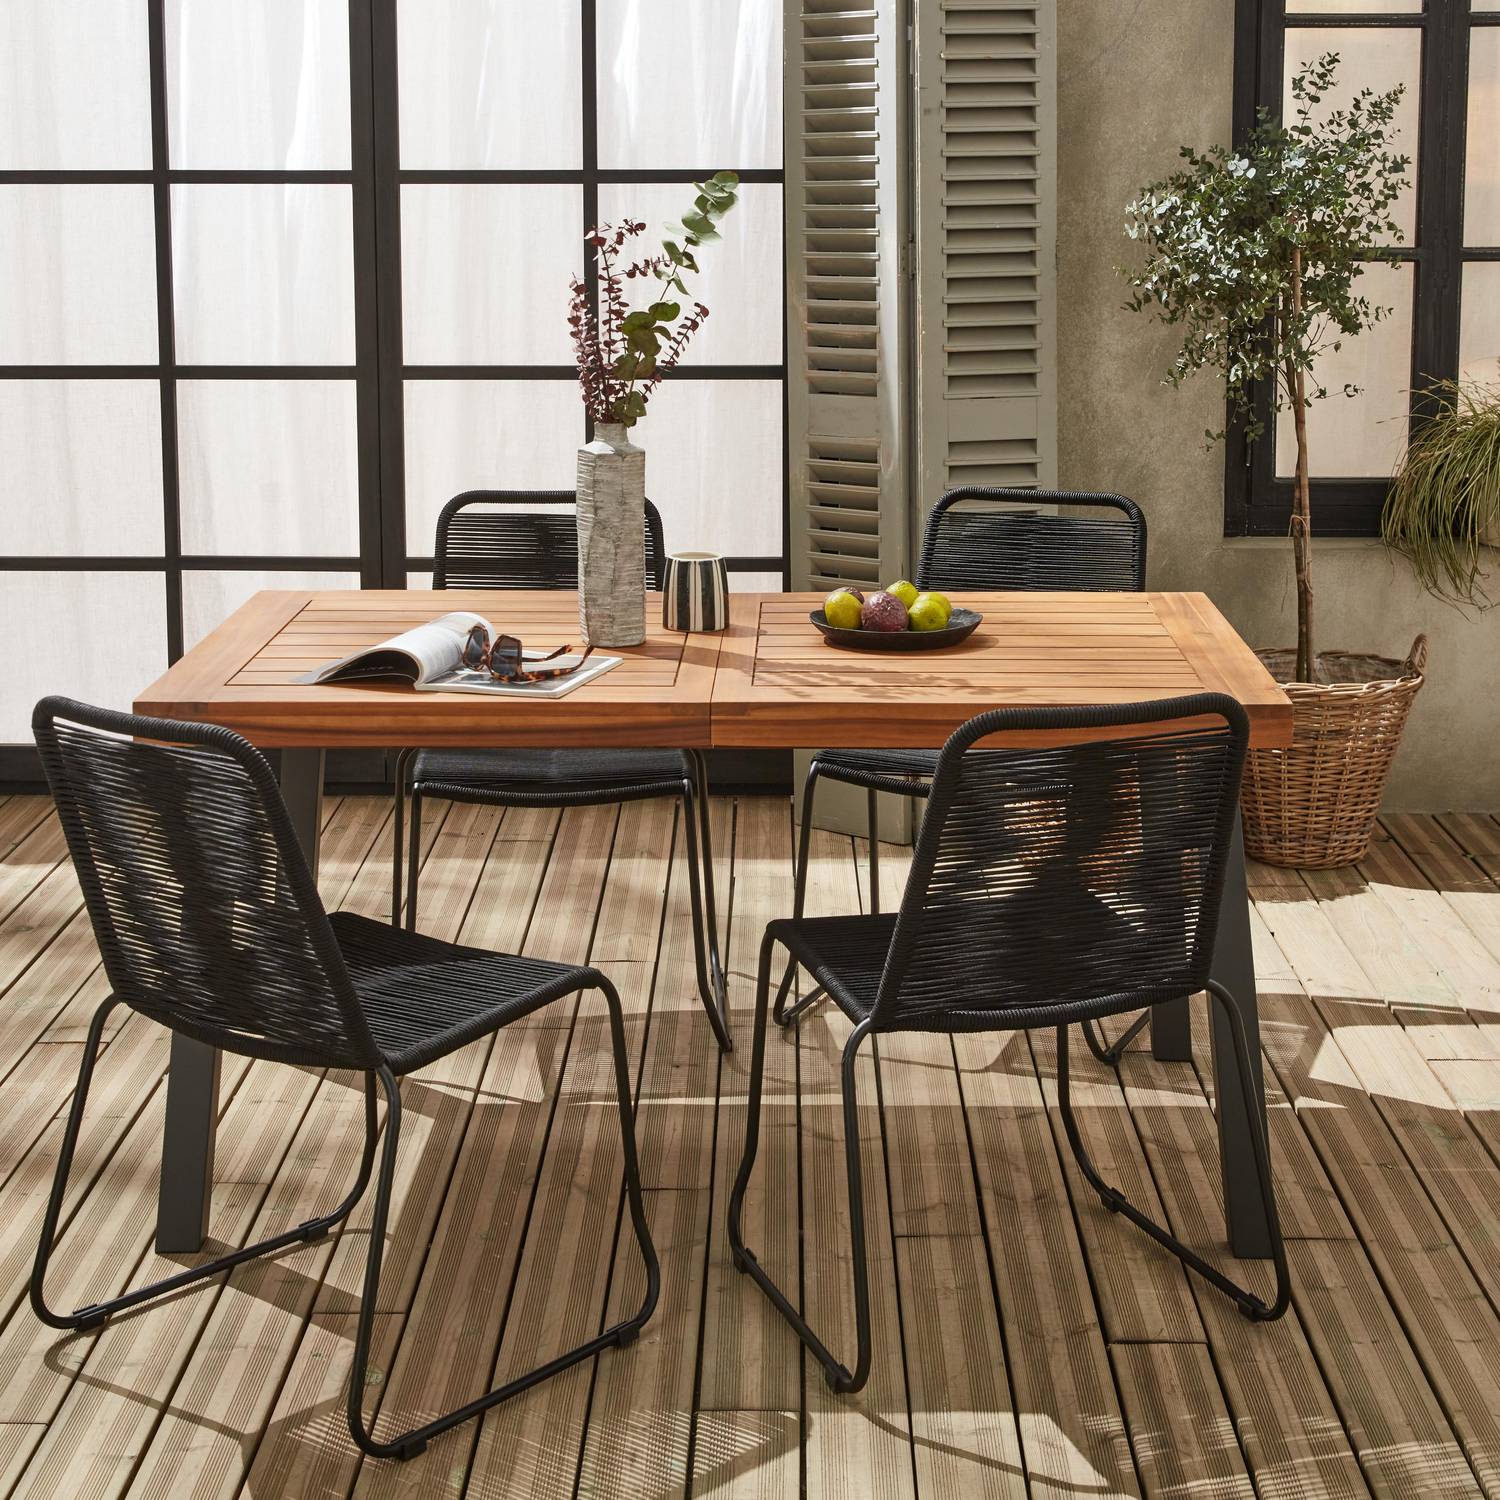 Table intérieur / extérieur Santana en bois et métal, 150cm + 4 chaises en corde BRASILIA noires, empilables Photo2